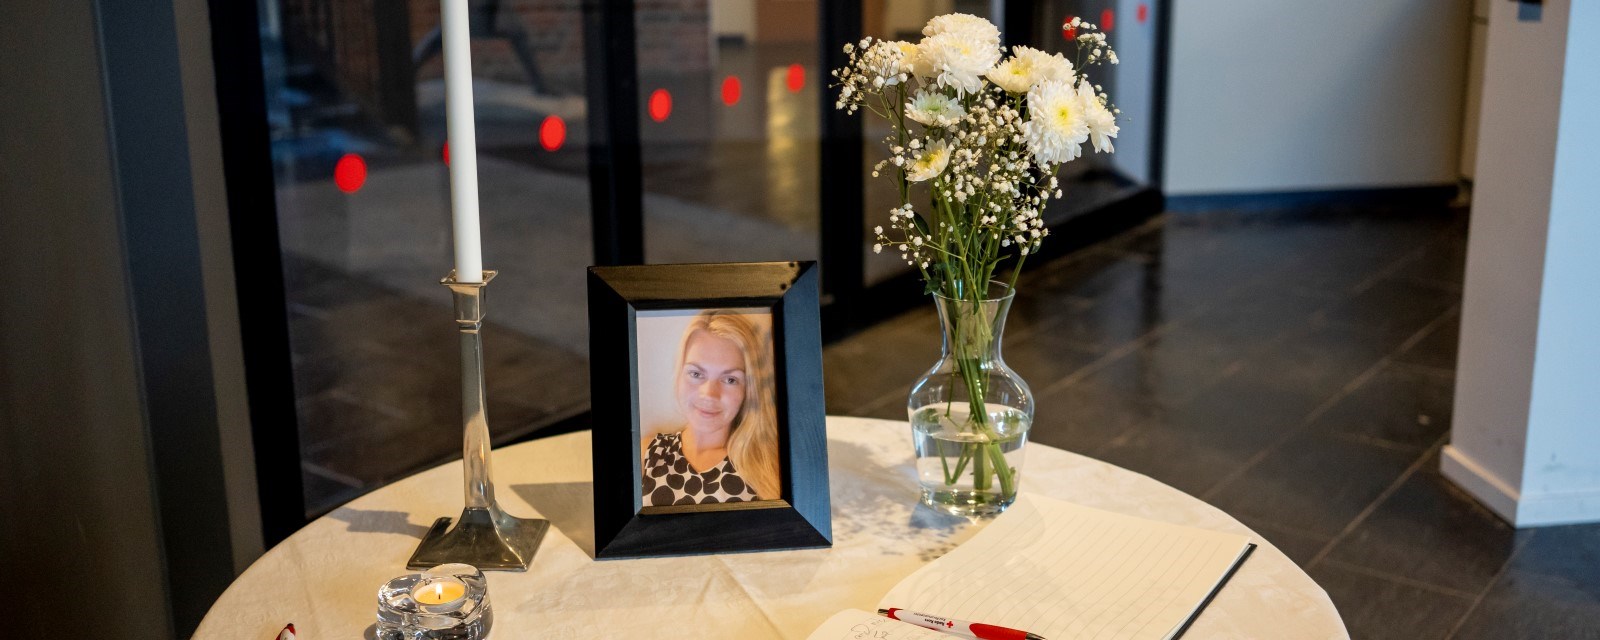 Et bord med blomster, stearinlys og et bilde av Karoline står i resepsjonen ved inngangen til Røde Kors. 